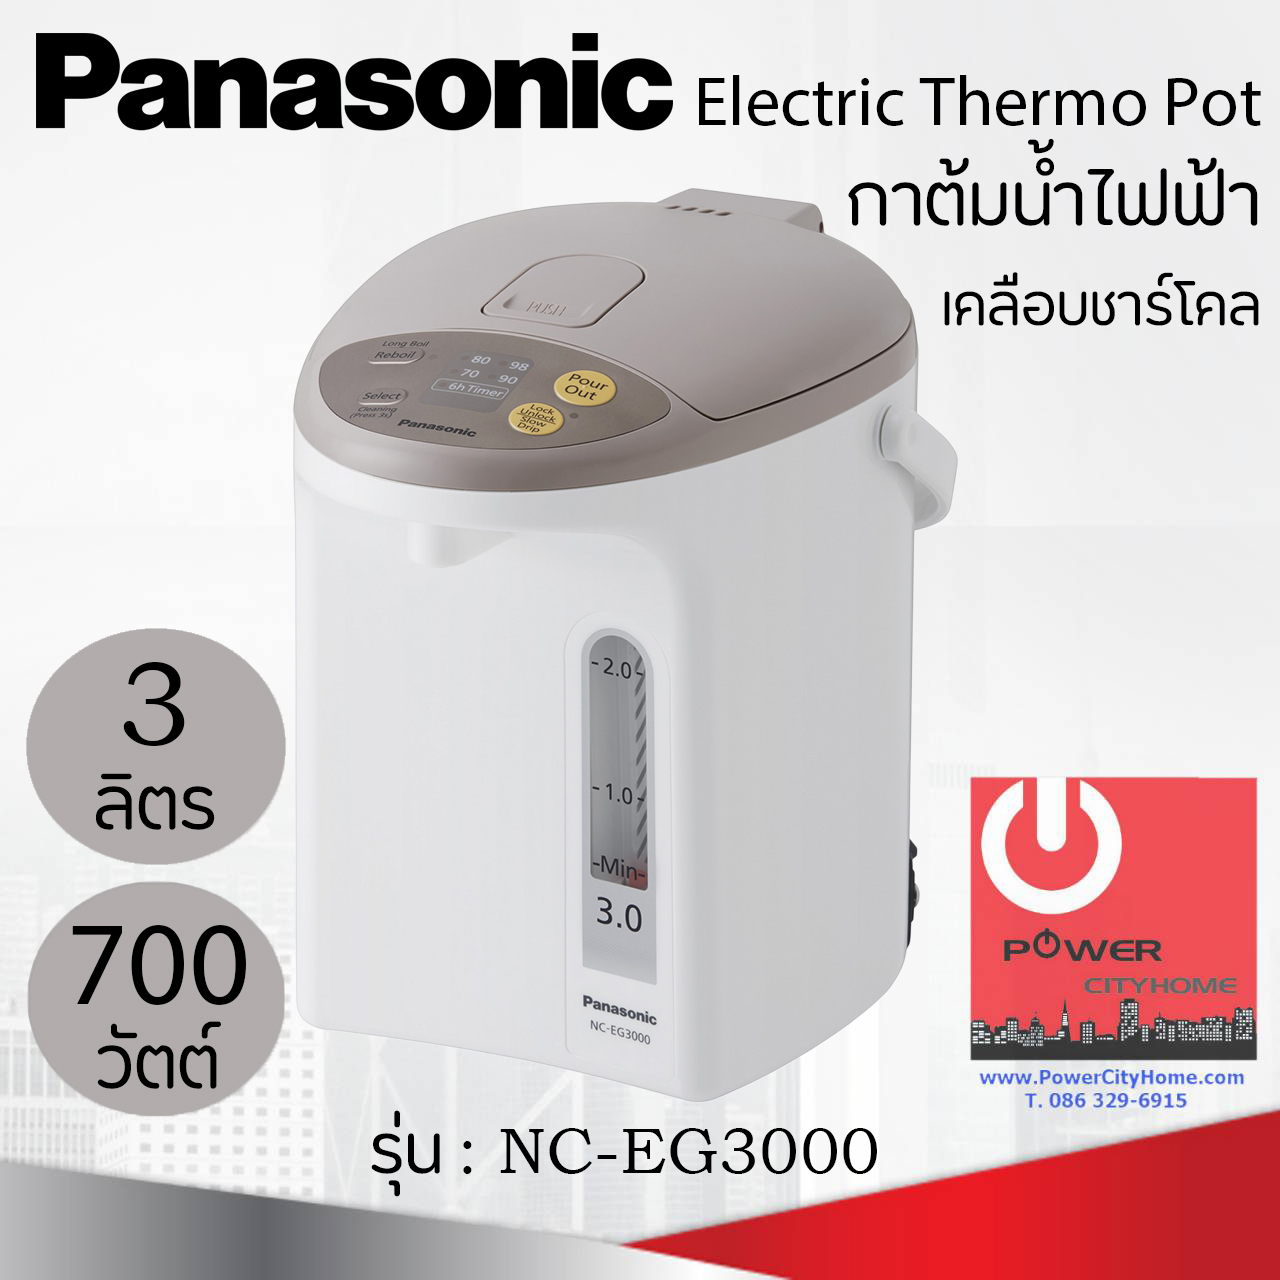 กระติกน้ำร้อน Panasonic ขนาด 3 ลิตร เคลือบคาร์บอนชาร์โคลช่วยเพิ่มรสชาติ เก็บความร้อนได้ดีเยี่ยม รุ่น NC-EG3000